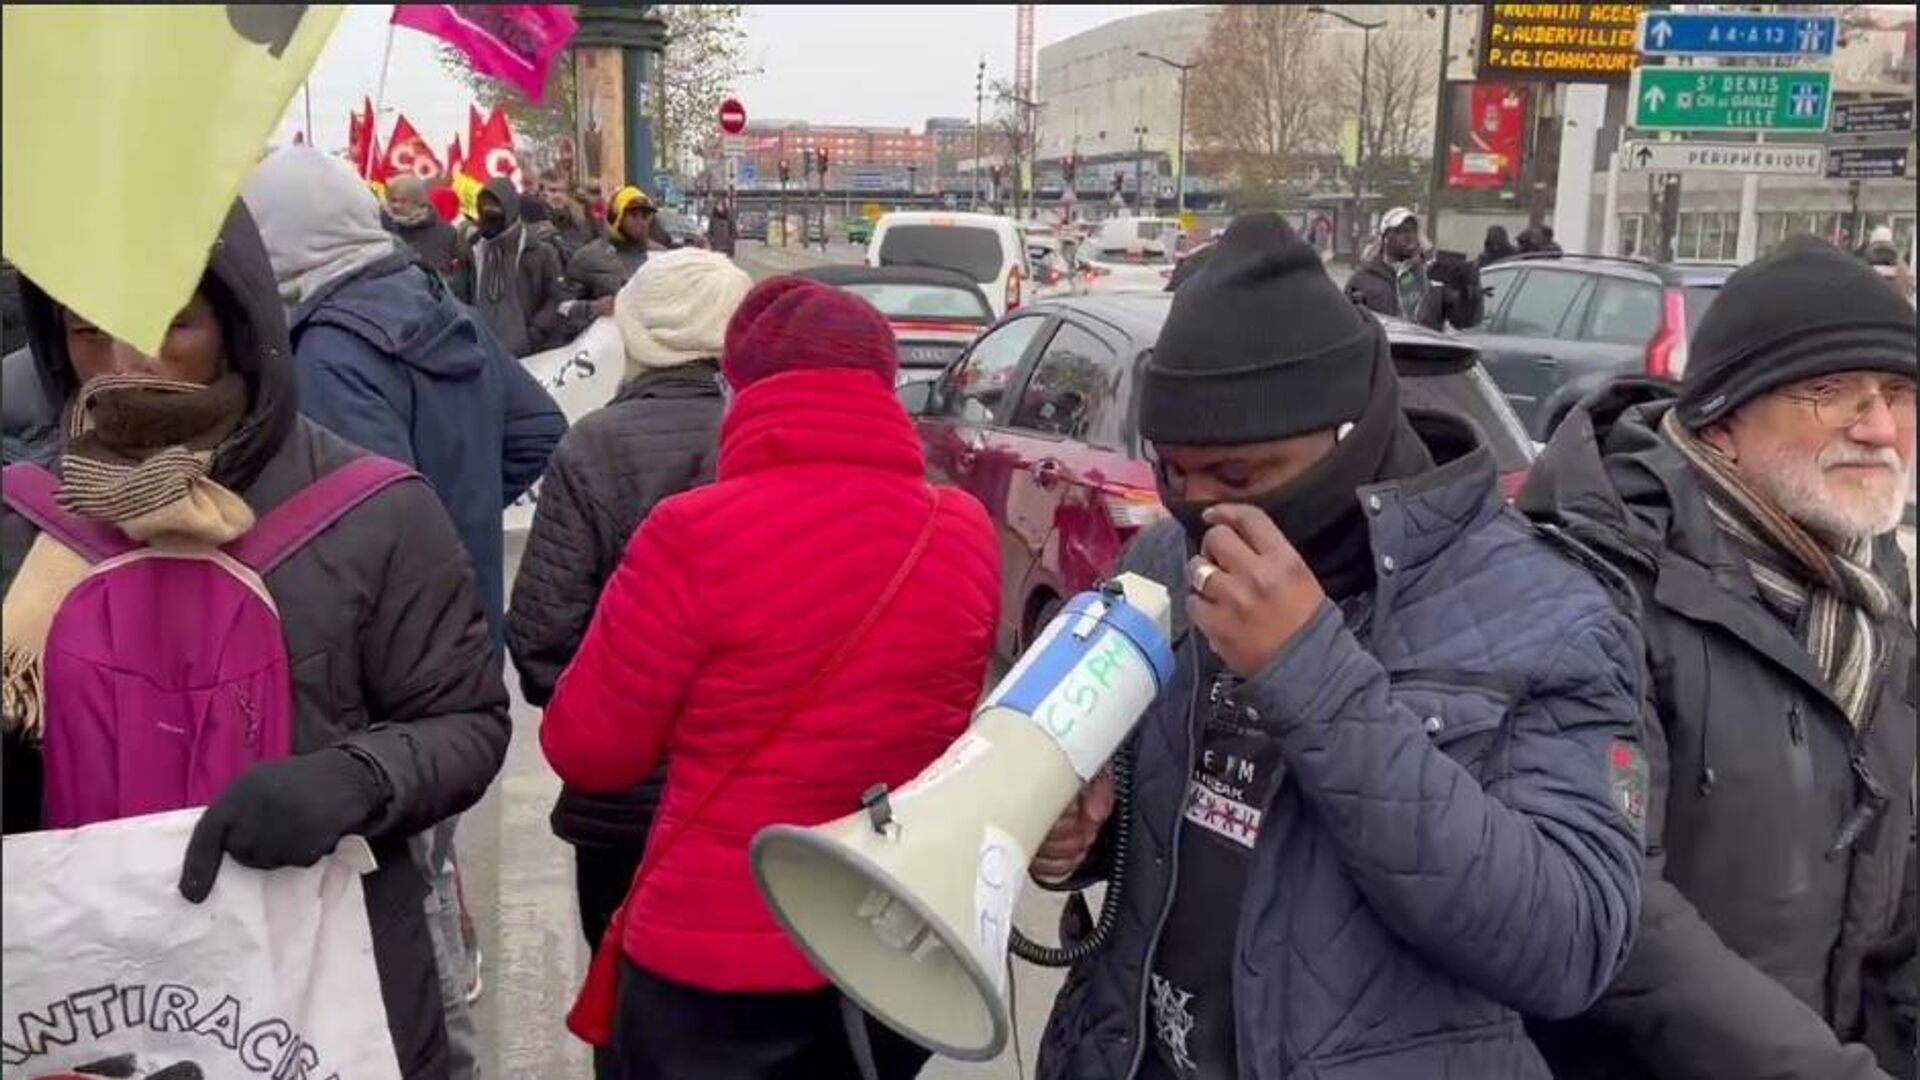 Des migrants africains dans les rues de Paris contre une loi sur la migration ; les détails